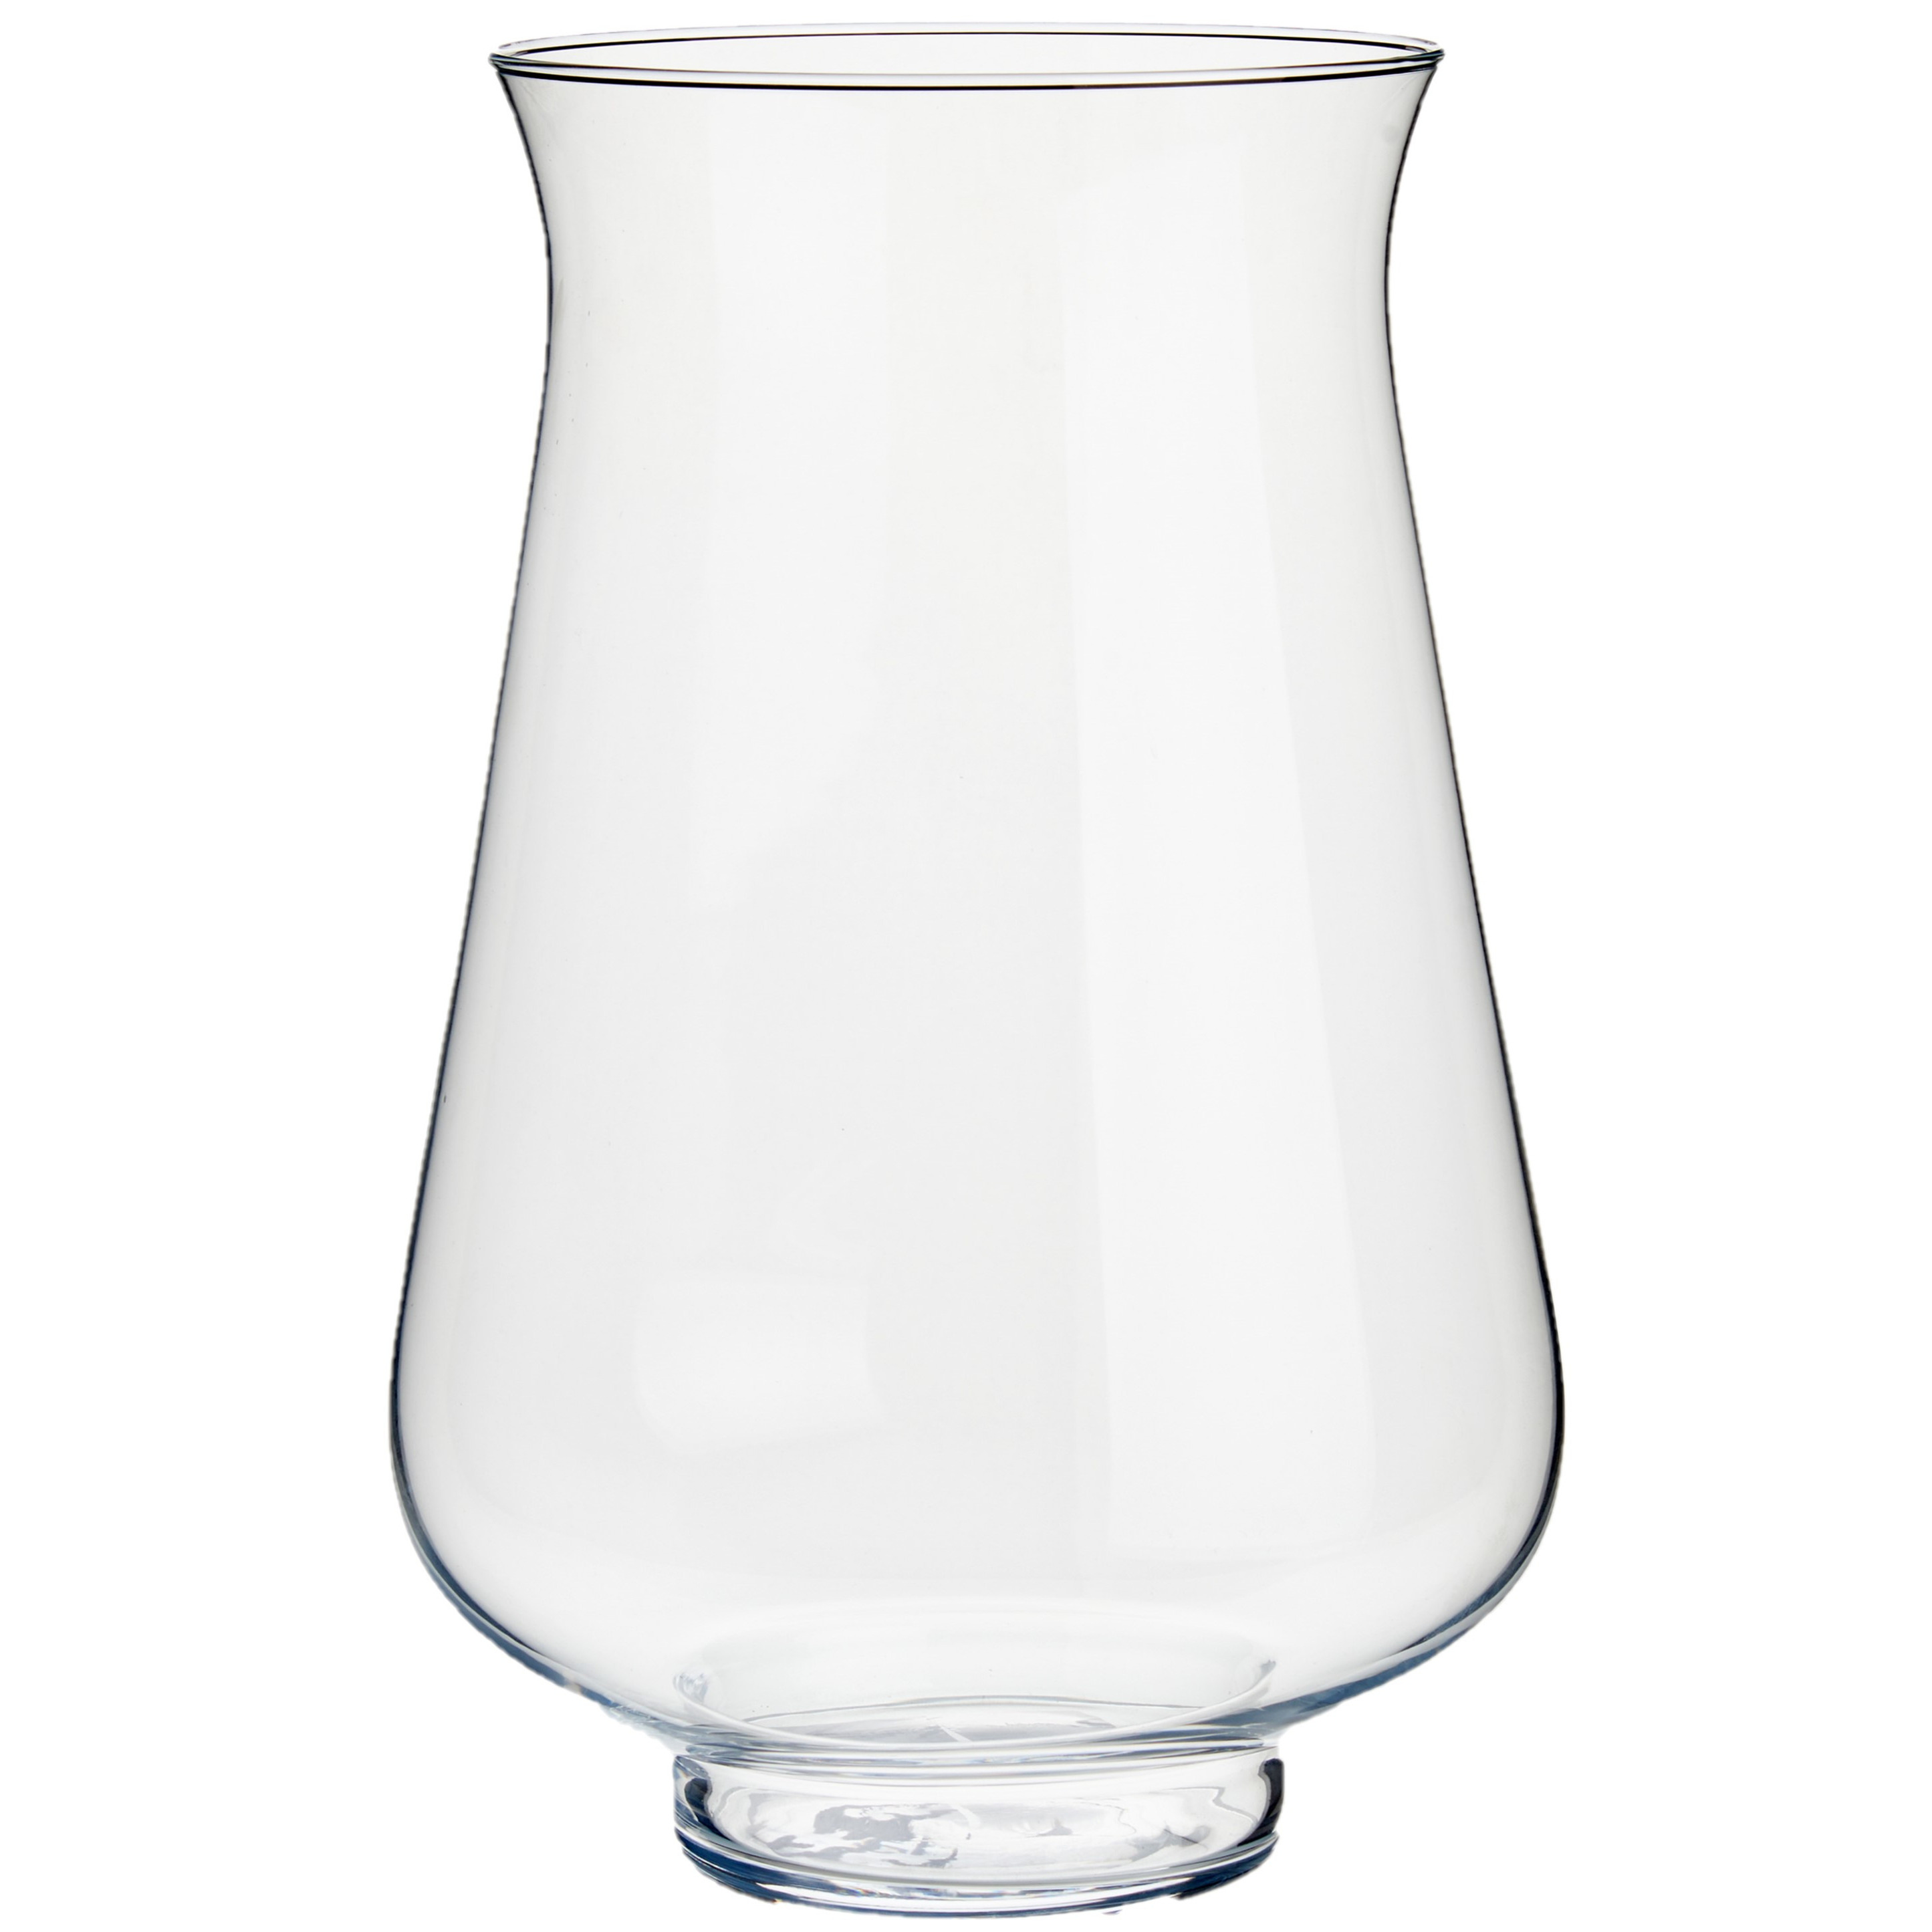 Bloemenvaas van glas 21 x 31 cm